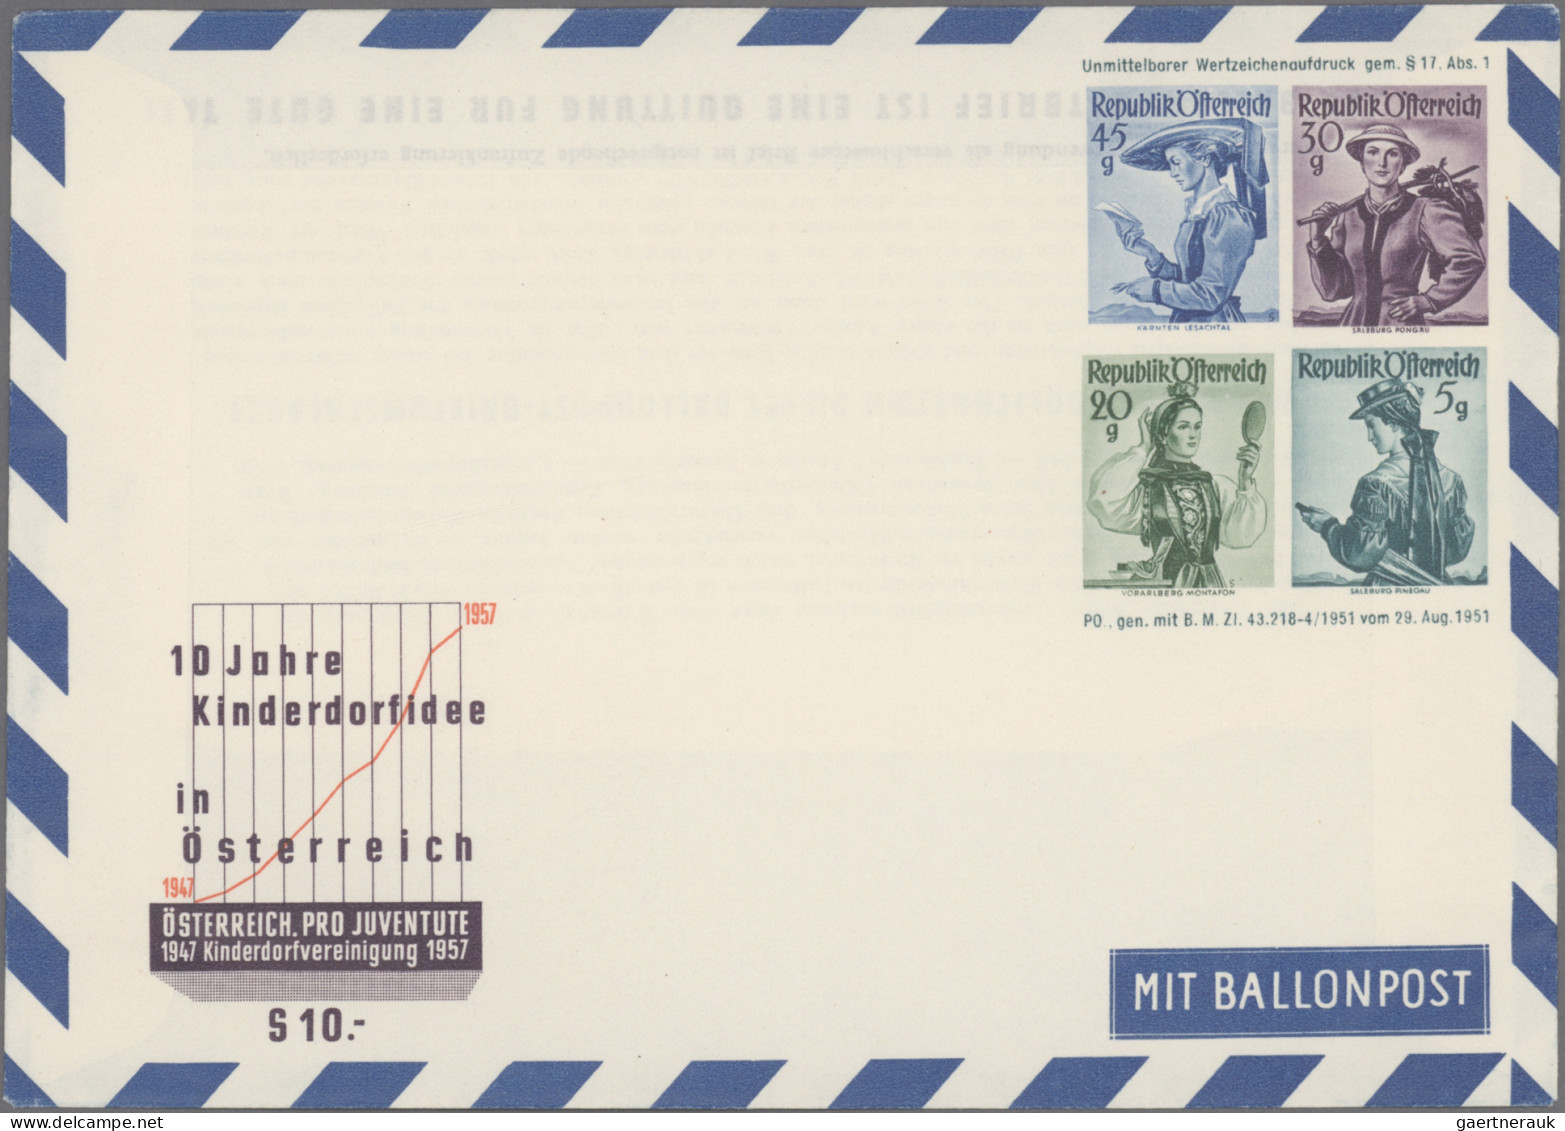 Österreich - Flugpost: 1918/1981, saubere Sammlung von 34 Flugpostbelegen sowie